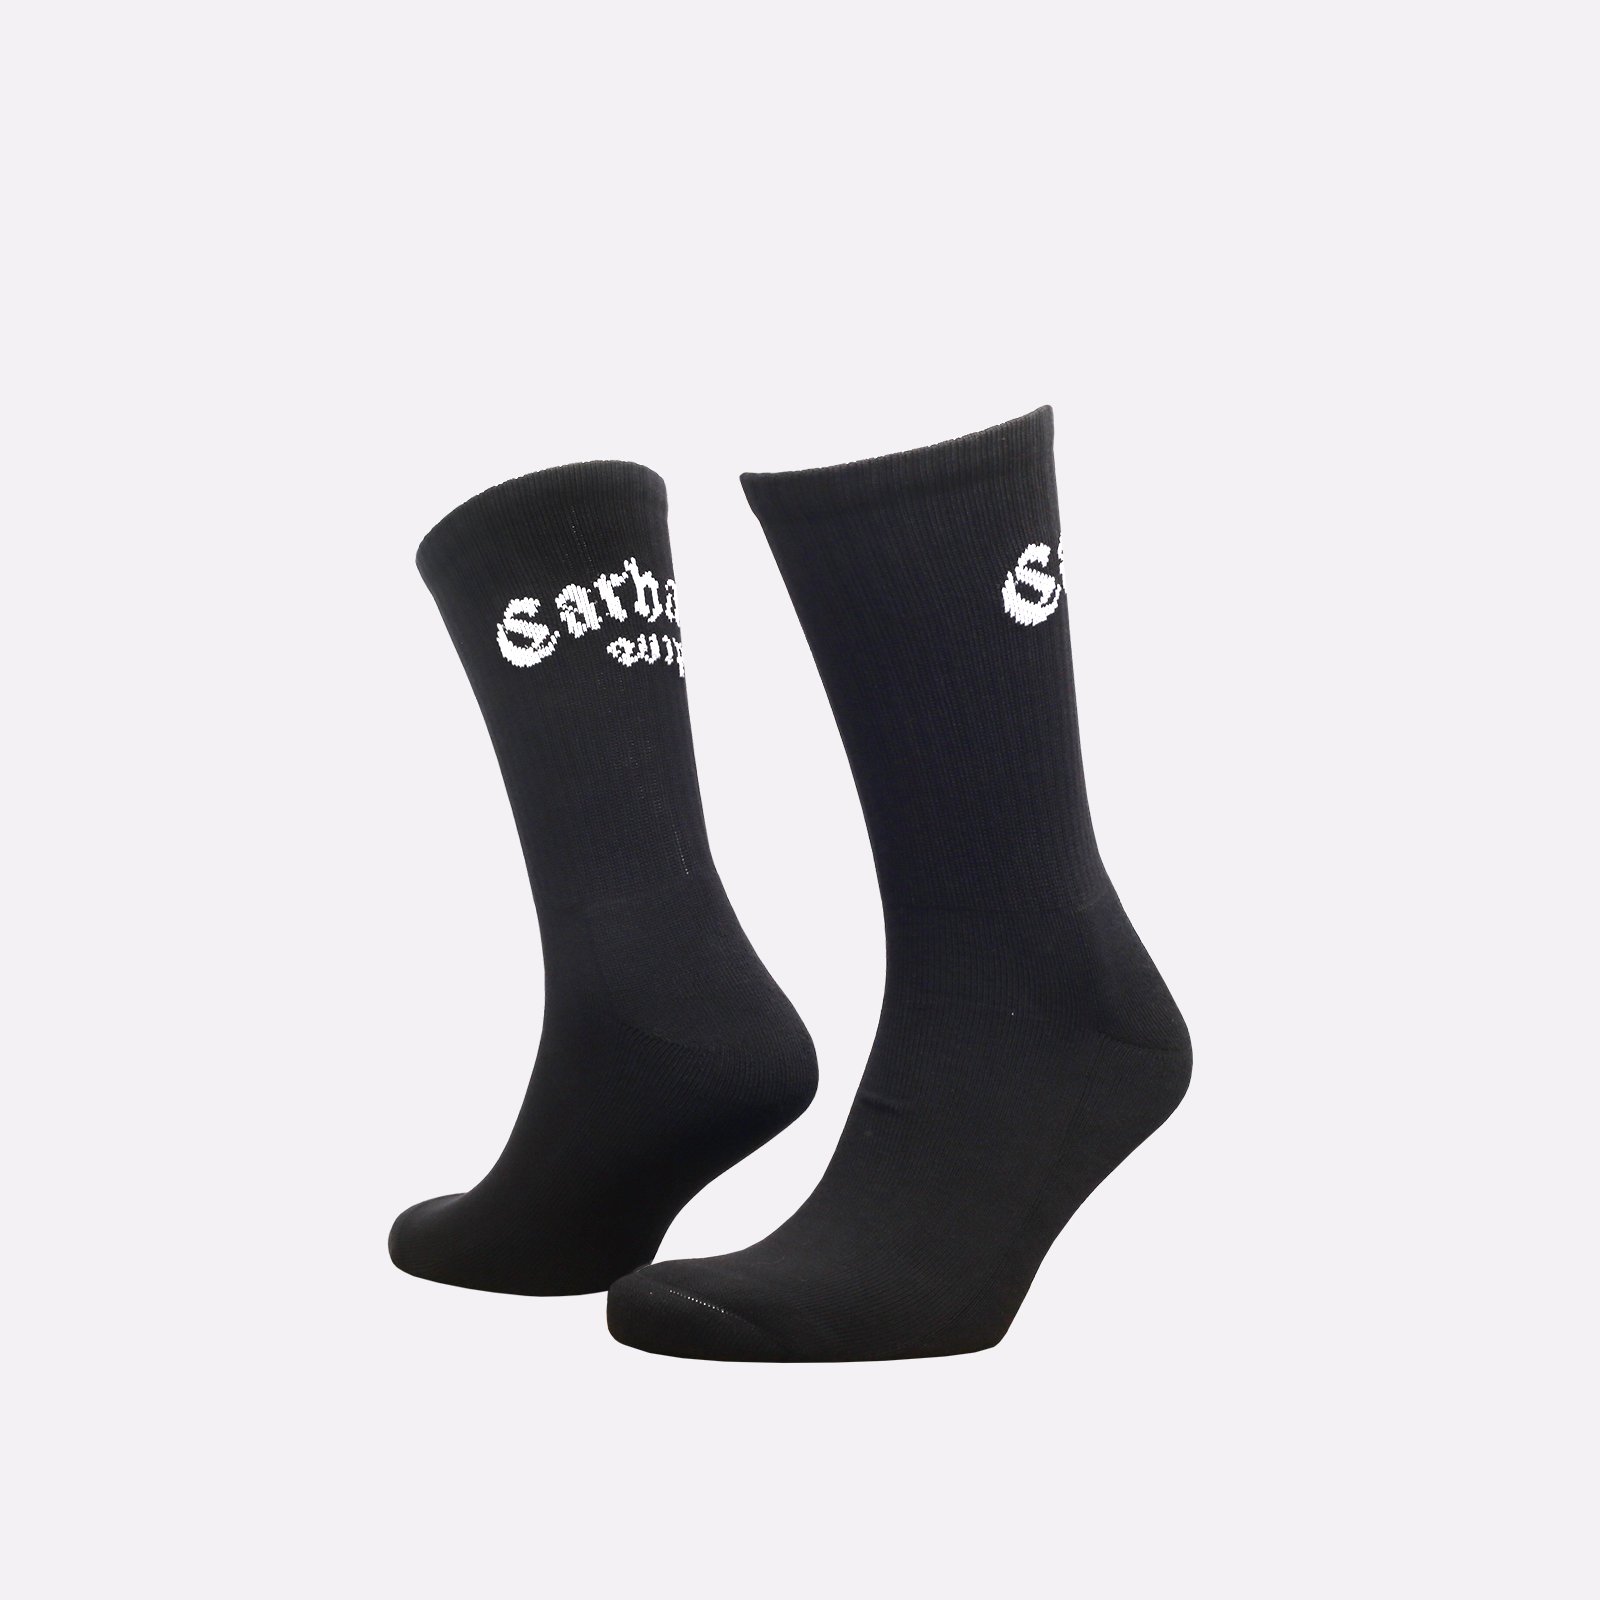 мужские черные носки Carhartt WIP Onyx Sox I032862-black/white - цена, описание, фото 1